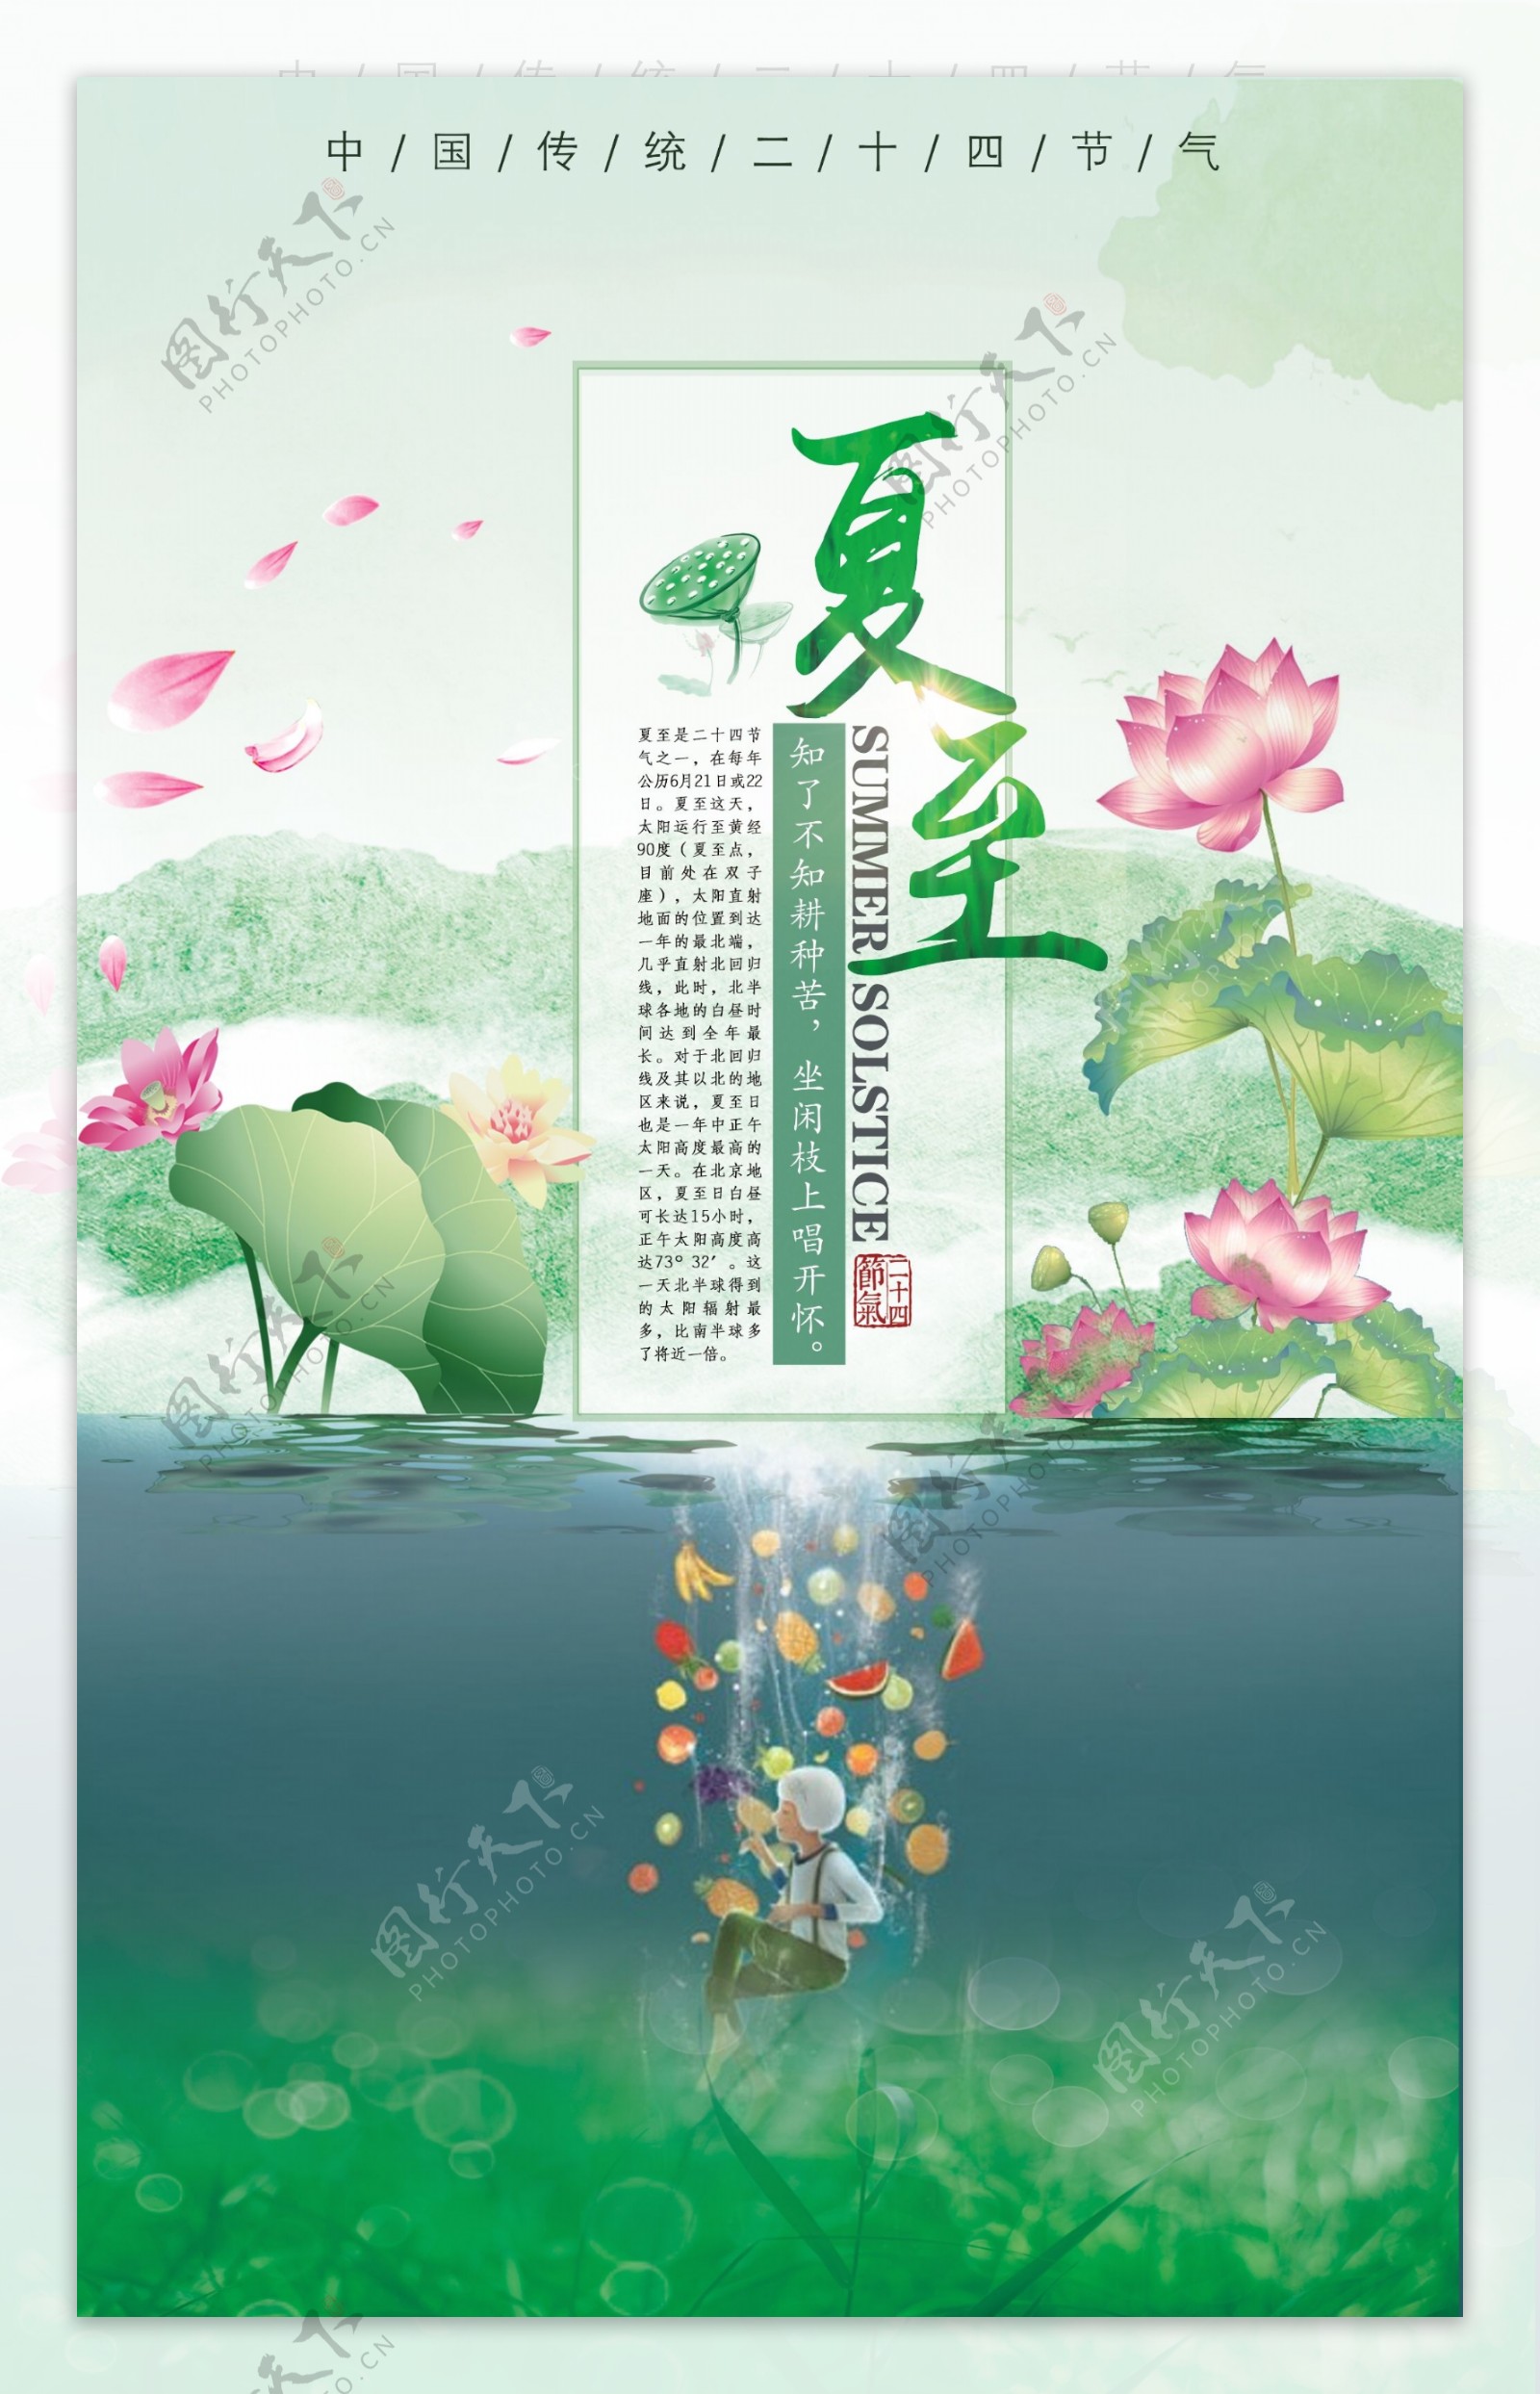 夏至节气节日海报